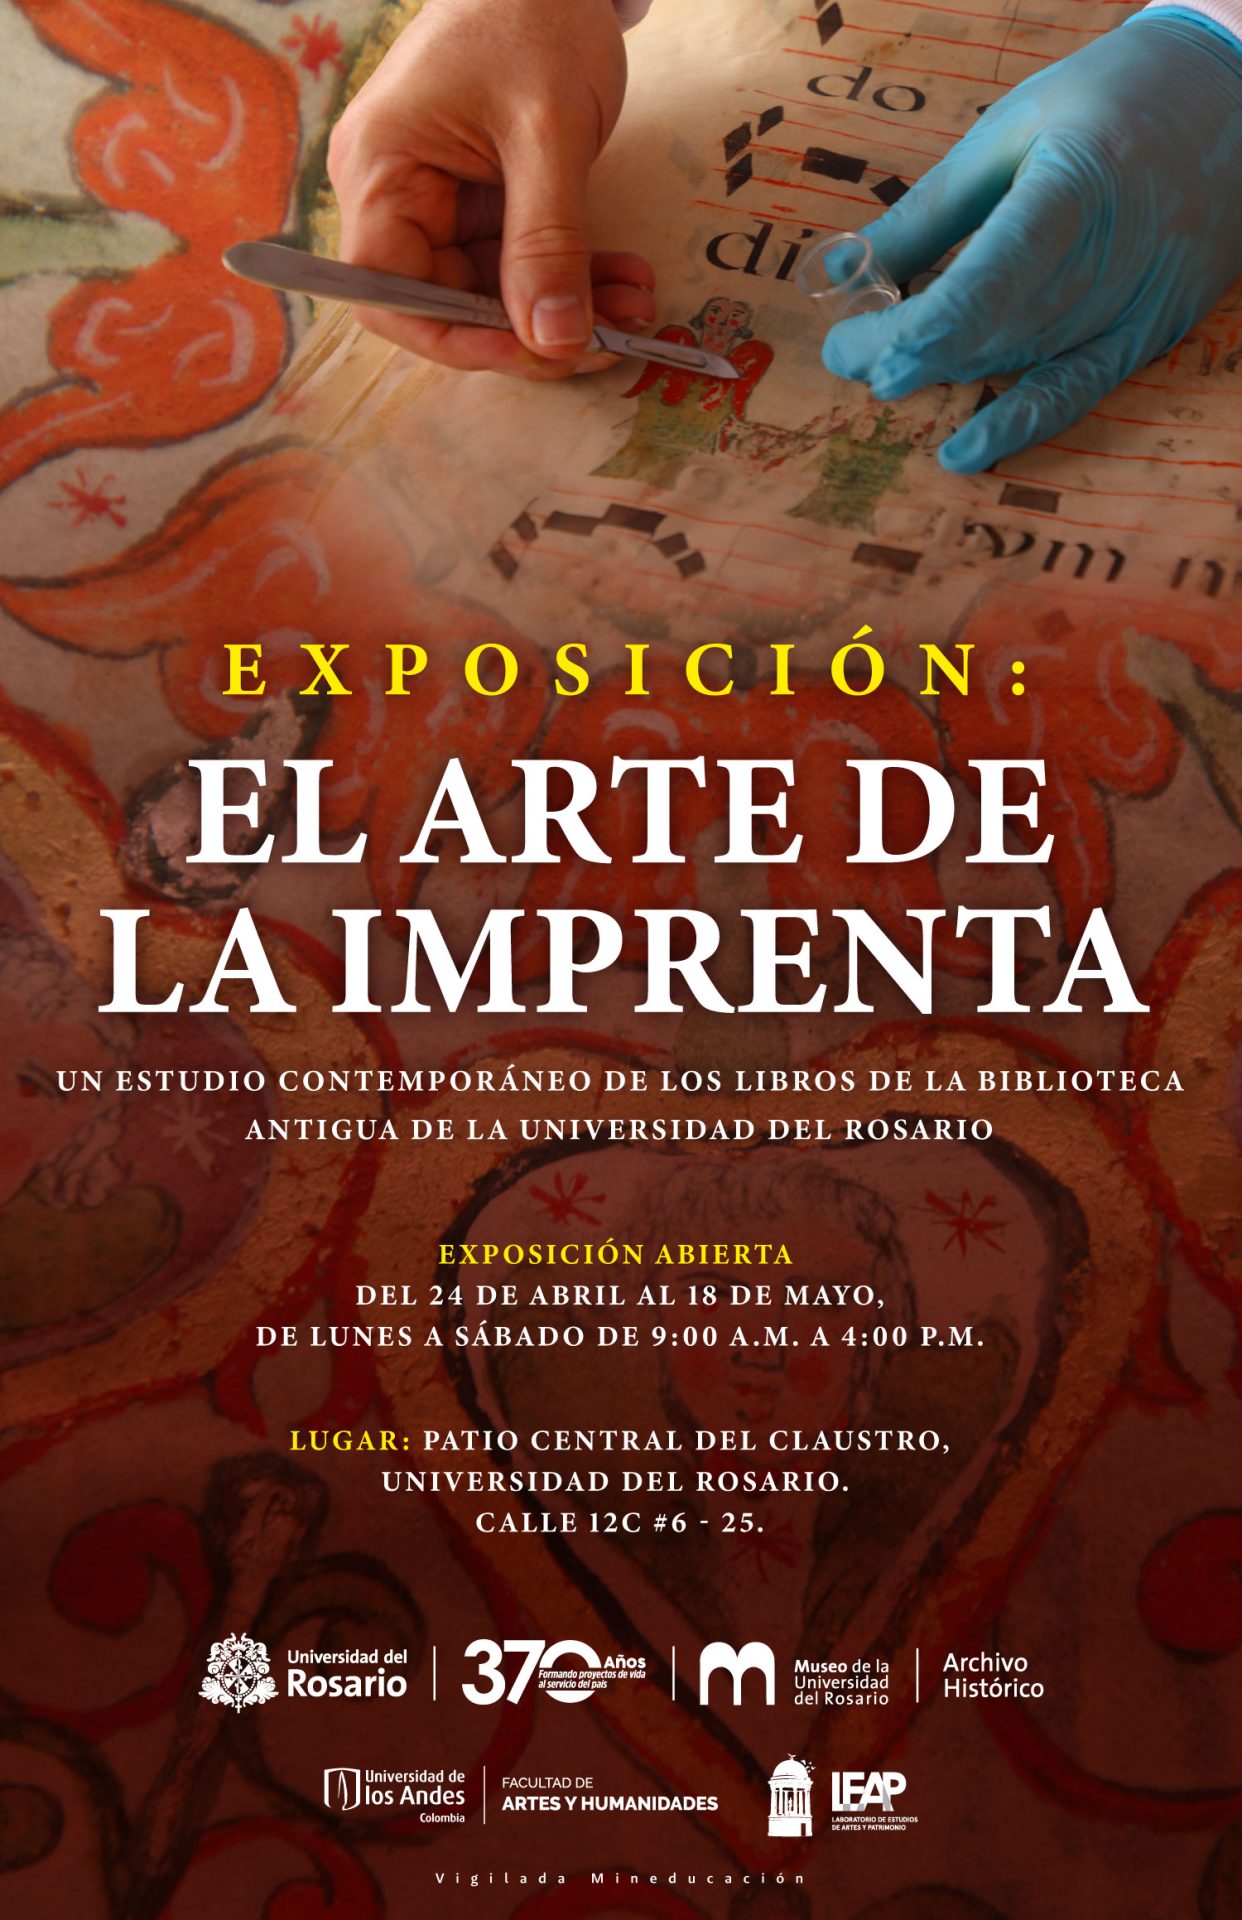 Eexposición: El arte de la imprenta:  Un estudio contemporáneo de los libros de la biblioteca antigua de la Universidad del Rosario 